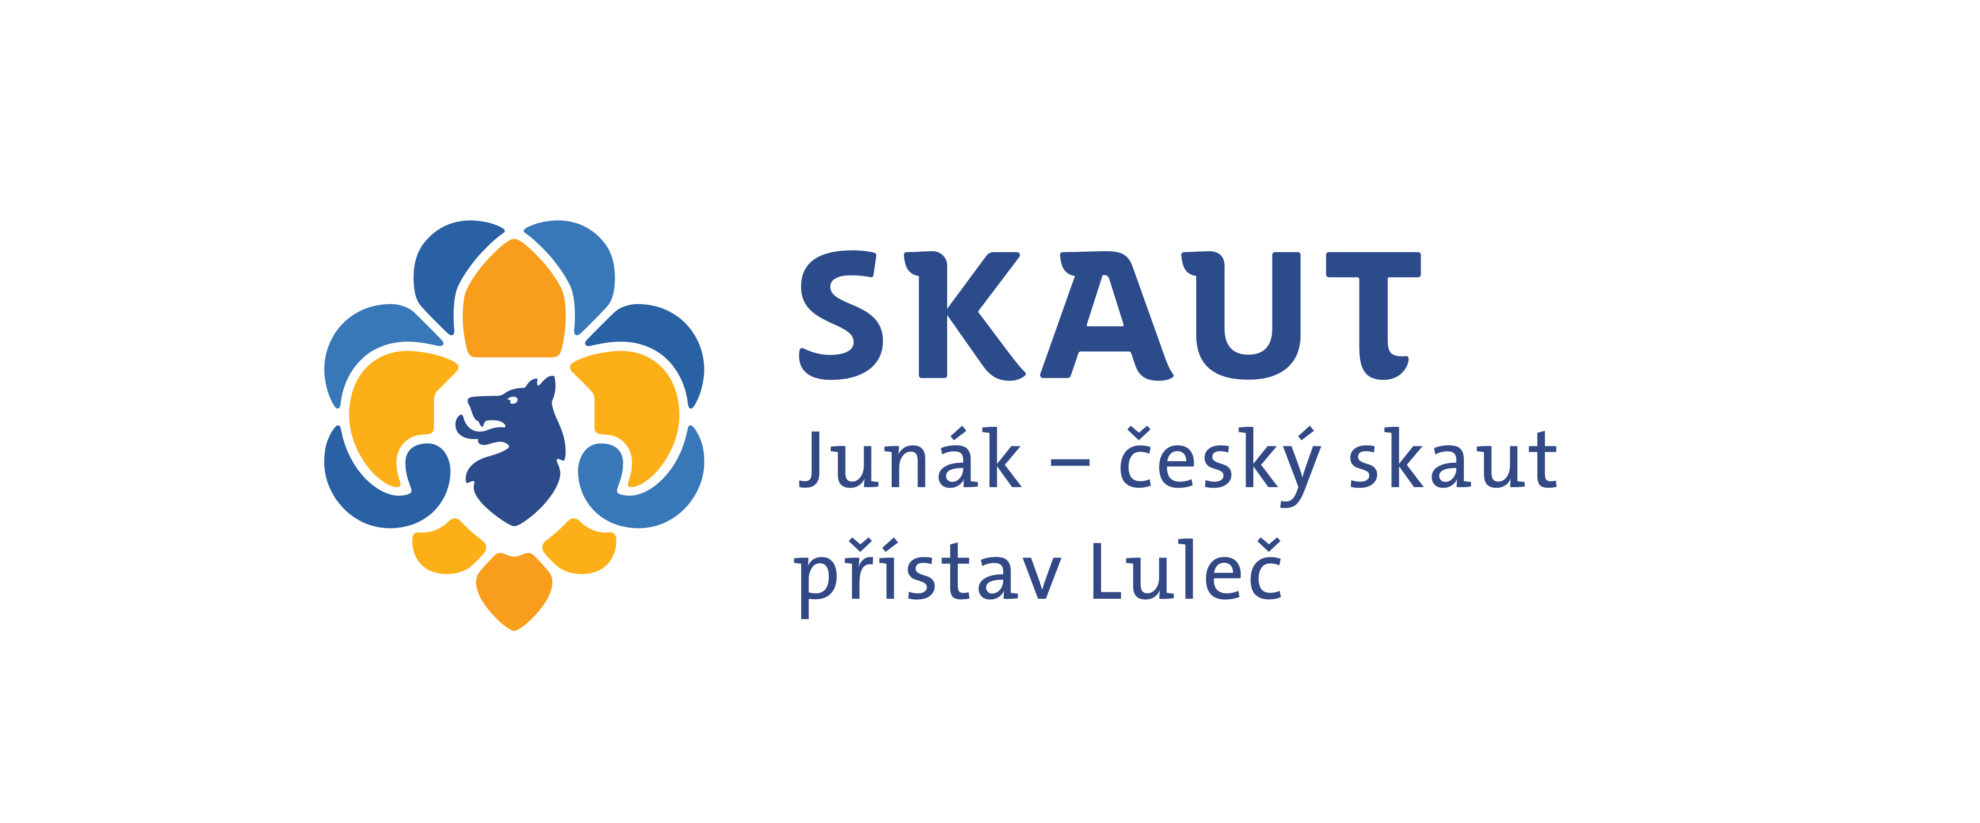 Junák – český skaut, přístav Luleč